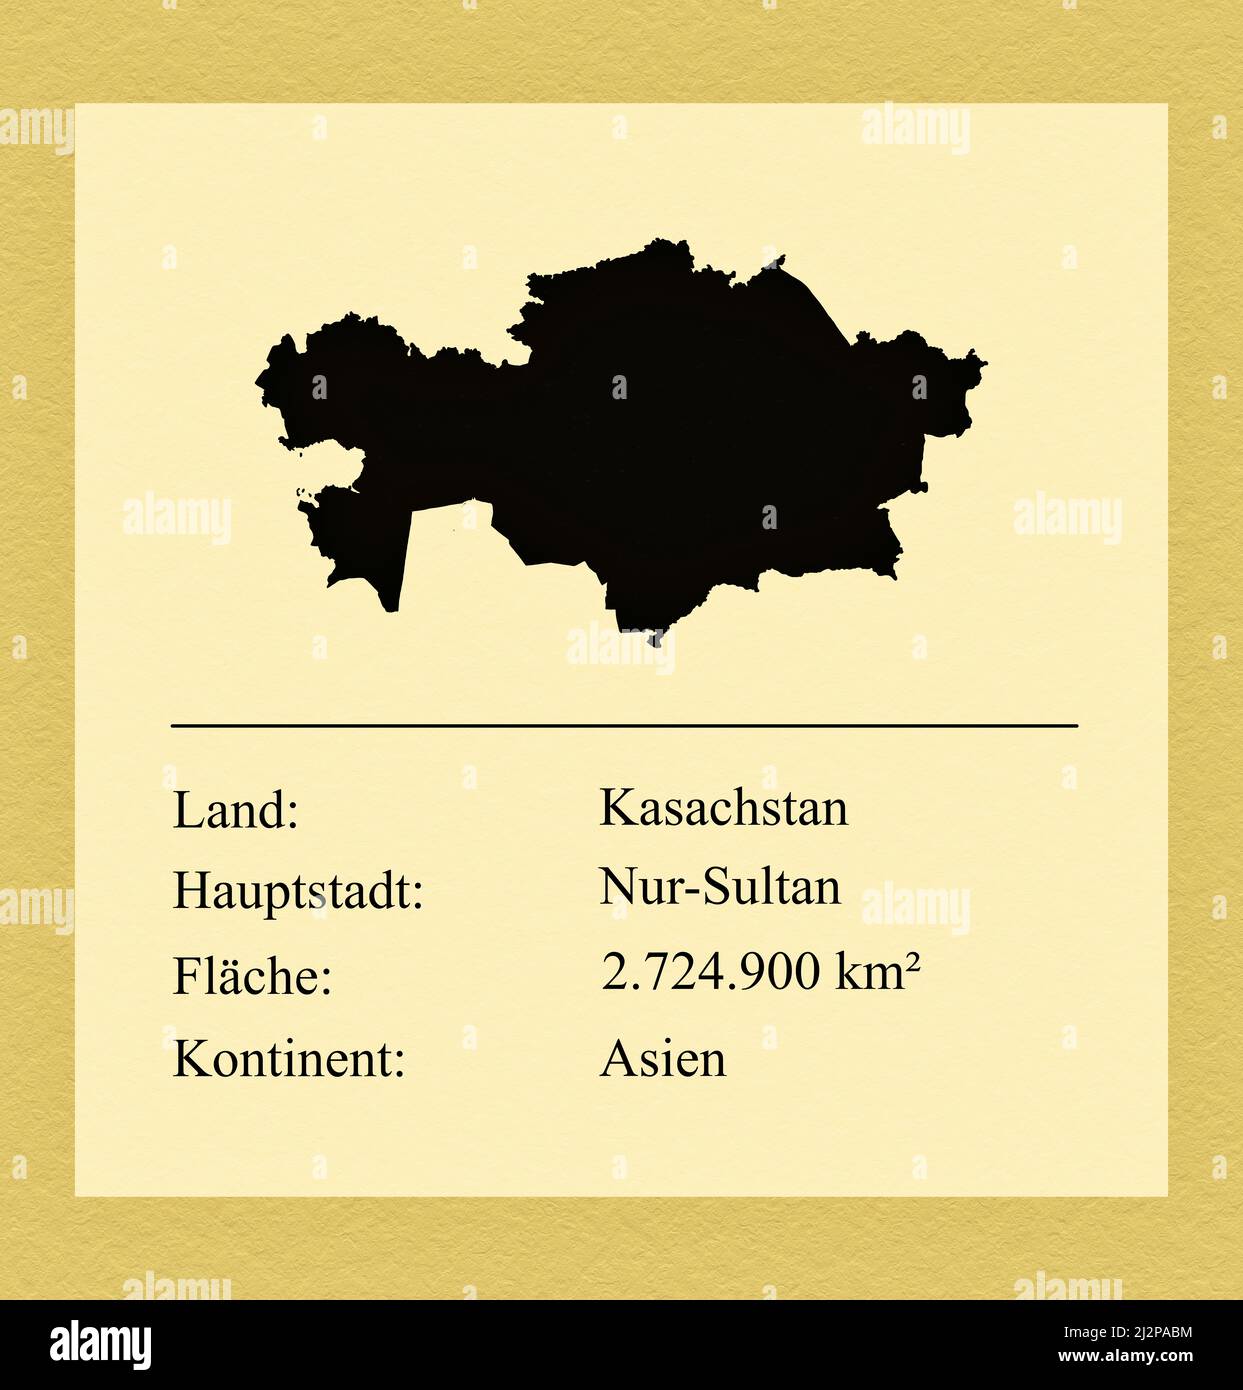 Umrisse des Landes Kasachstan, darunter ein kleiner Steckbrief mit Ländernamen, Hauptstadt, Fläche und Kontinent Foto Stock